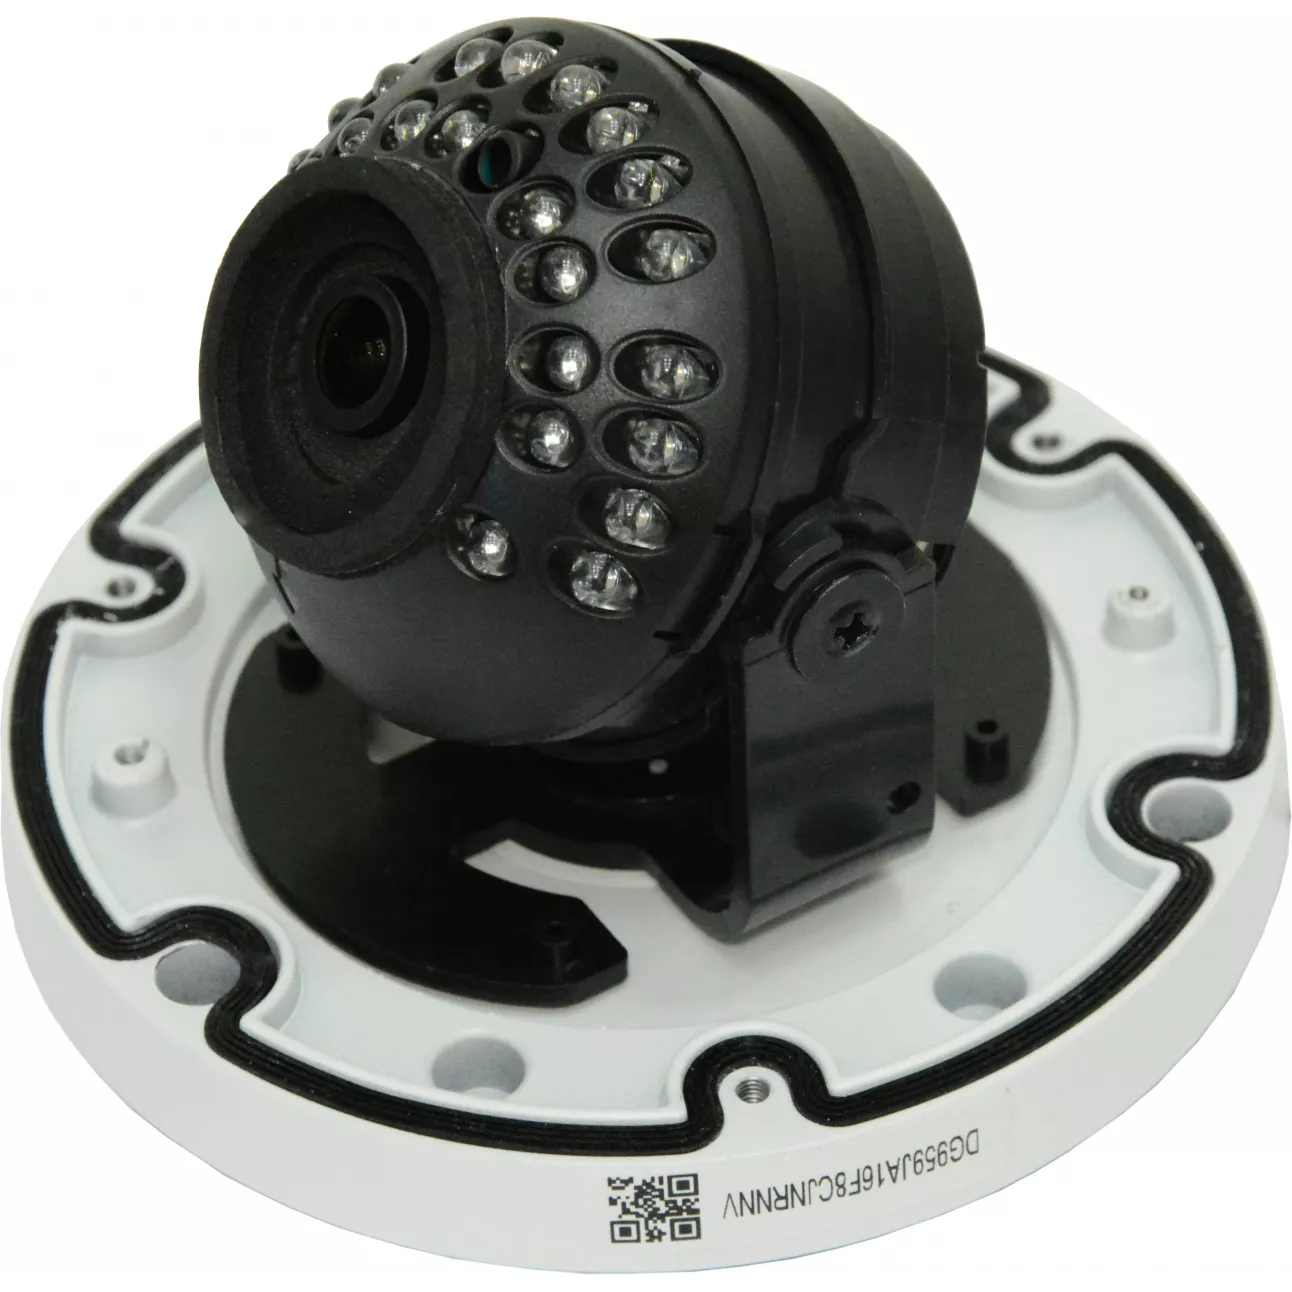 IP камера OMNY 404M PRO антивандальная купольная мини 1080p, c ИК подсветкой, 6мм, 12В/PoE, EasyMic (неполная комплектация)